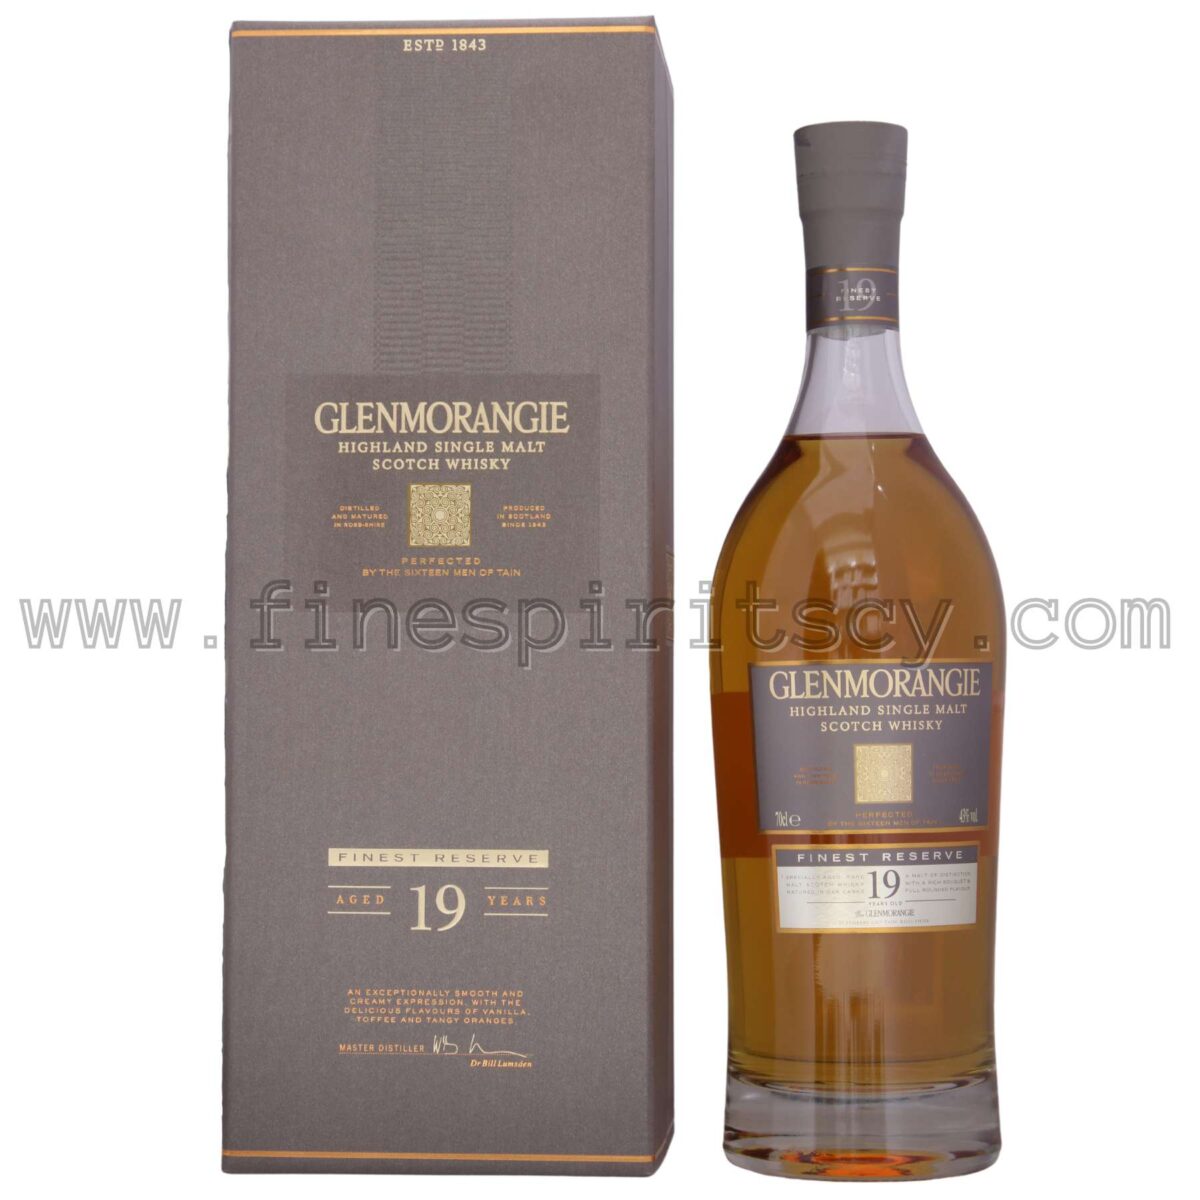 Glenmorangie 19 Years Old Front Bottle Box Cyprus Price Order Online FSCY